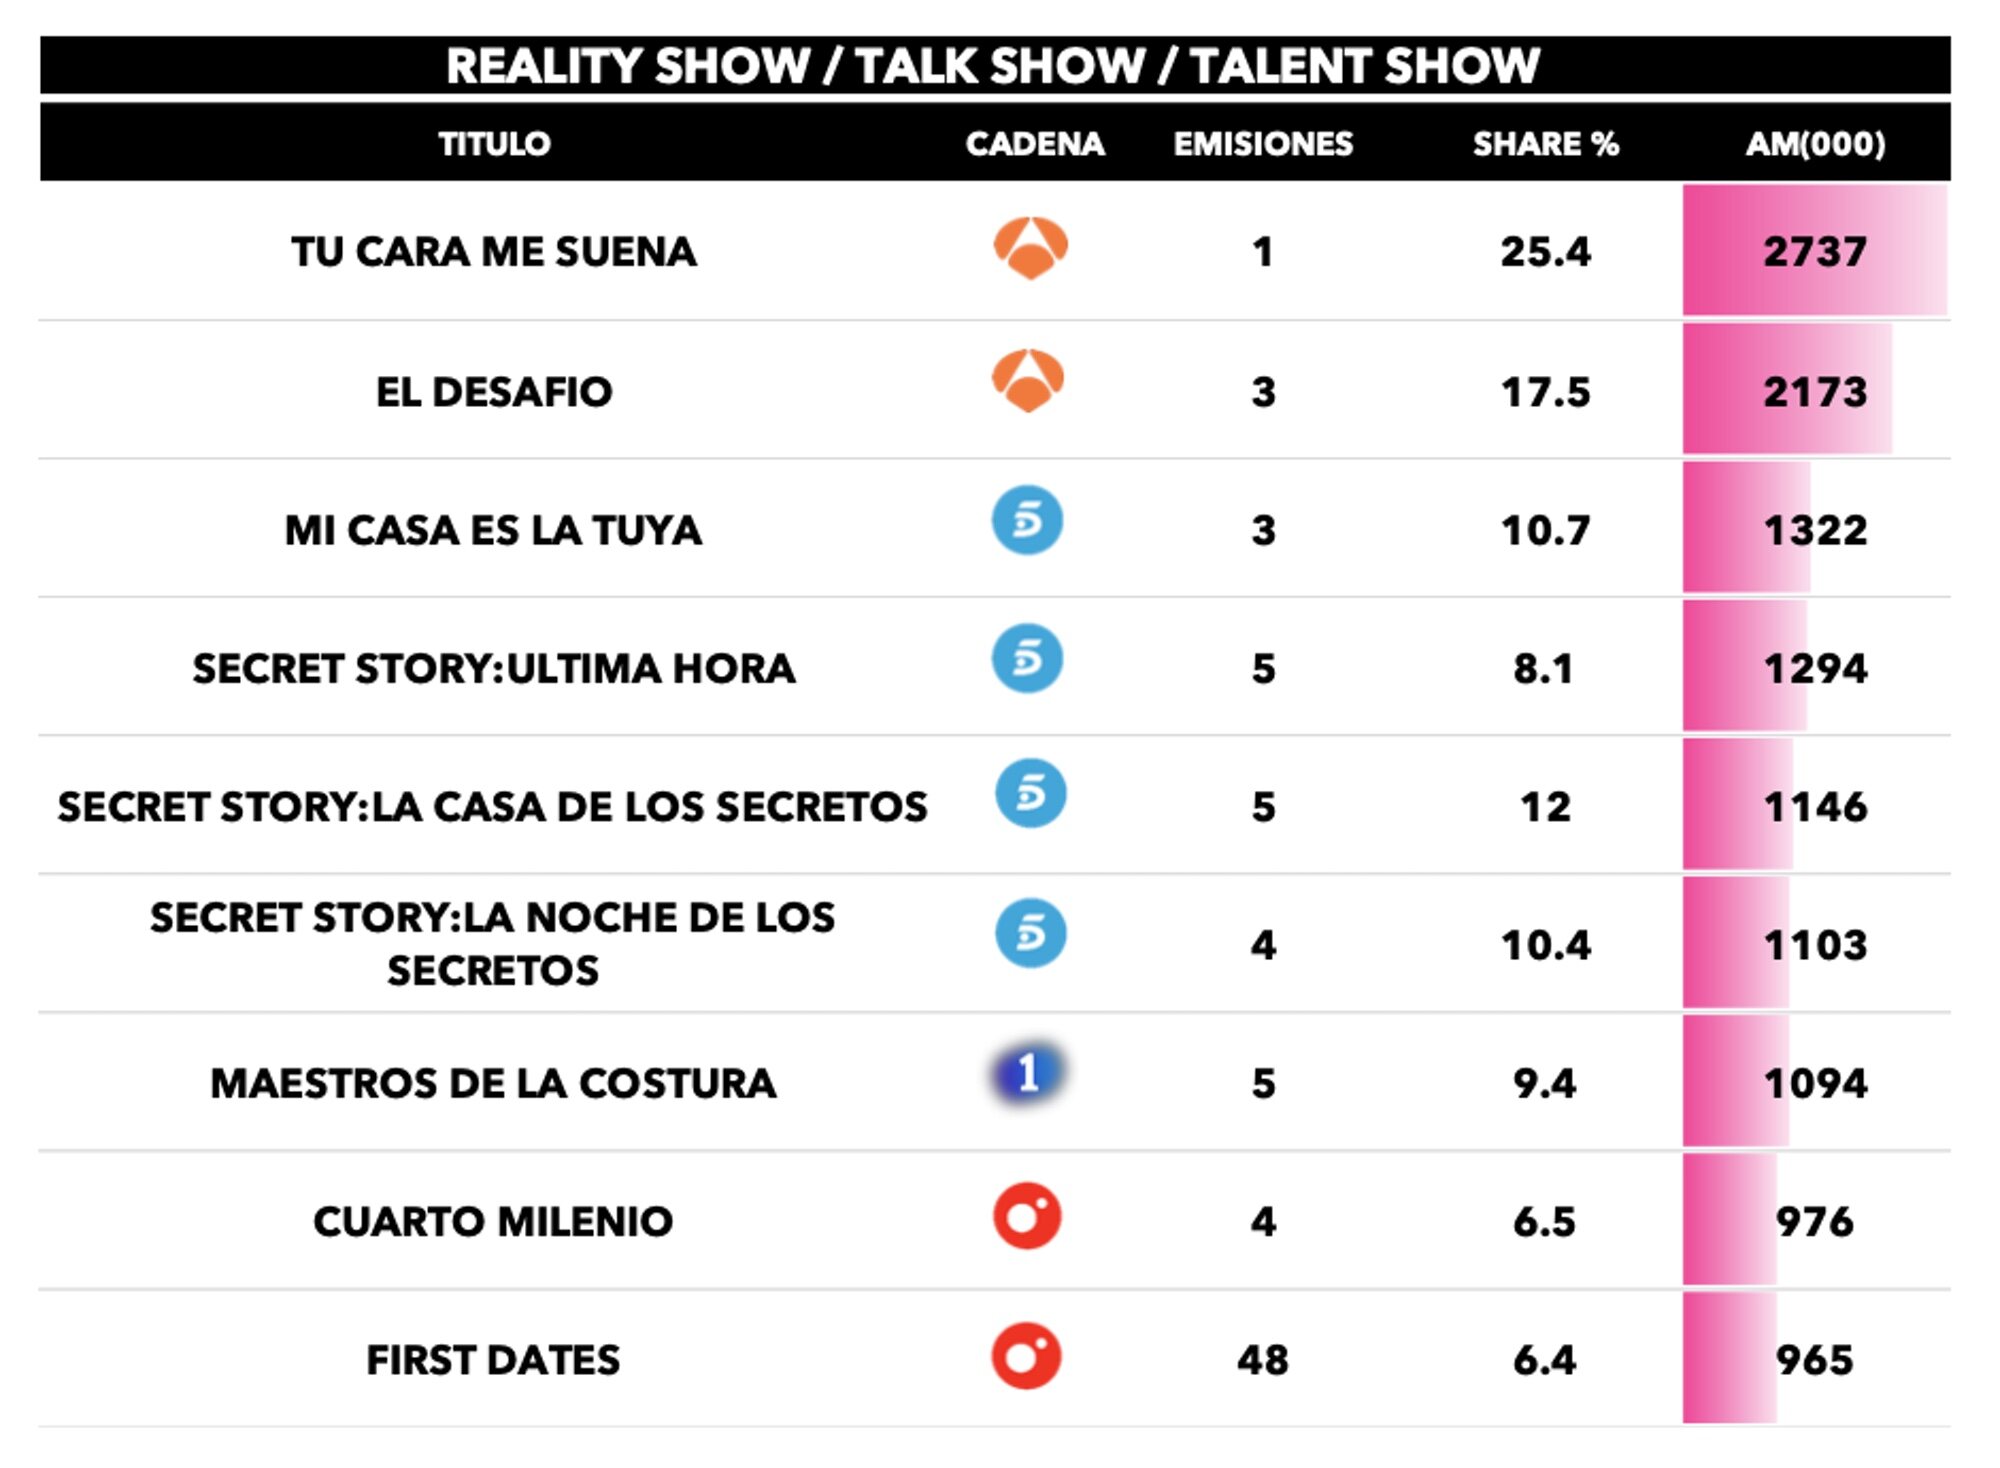 Realities, talents y talk shows más vistos